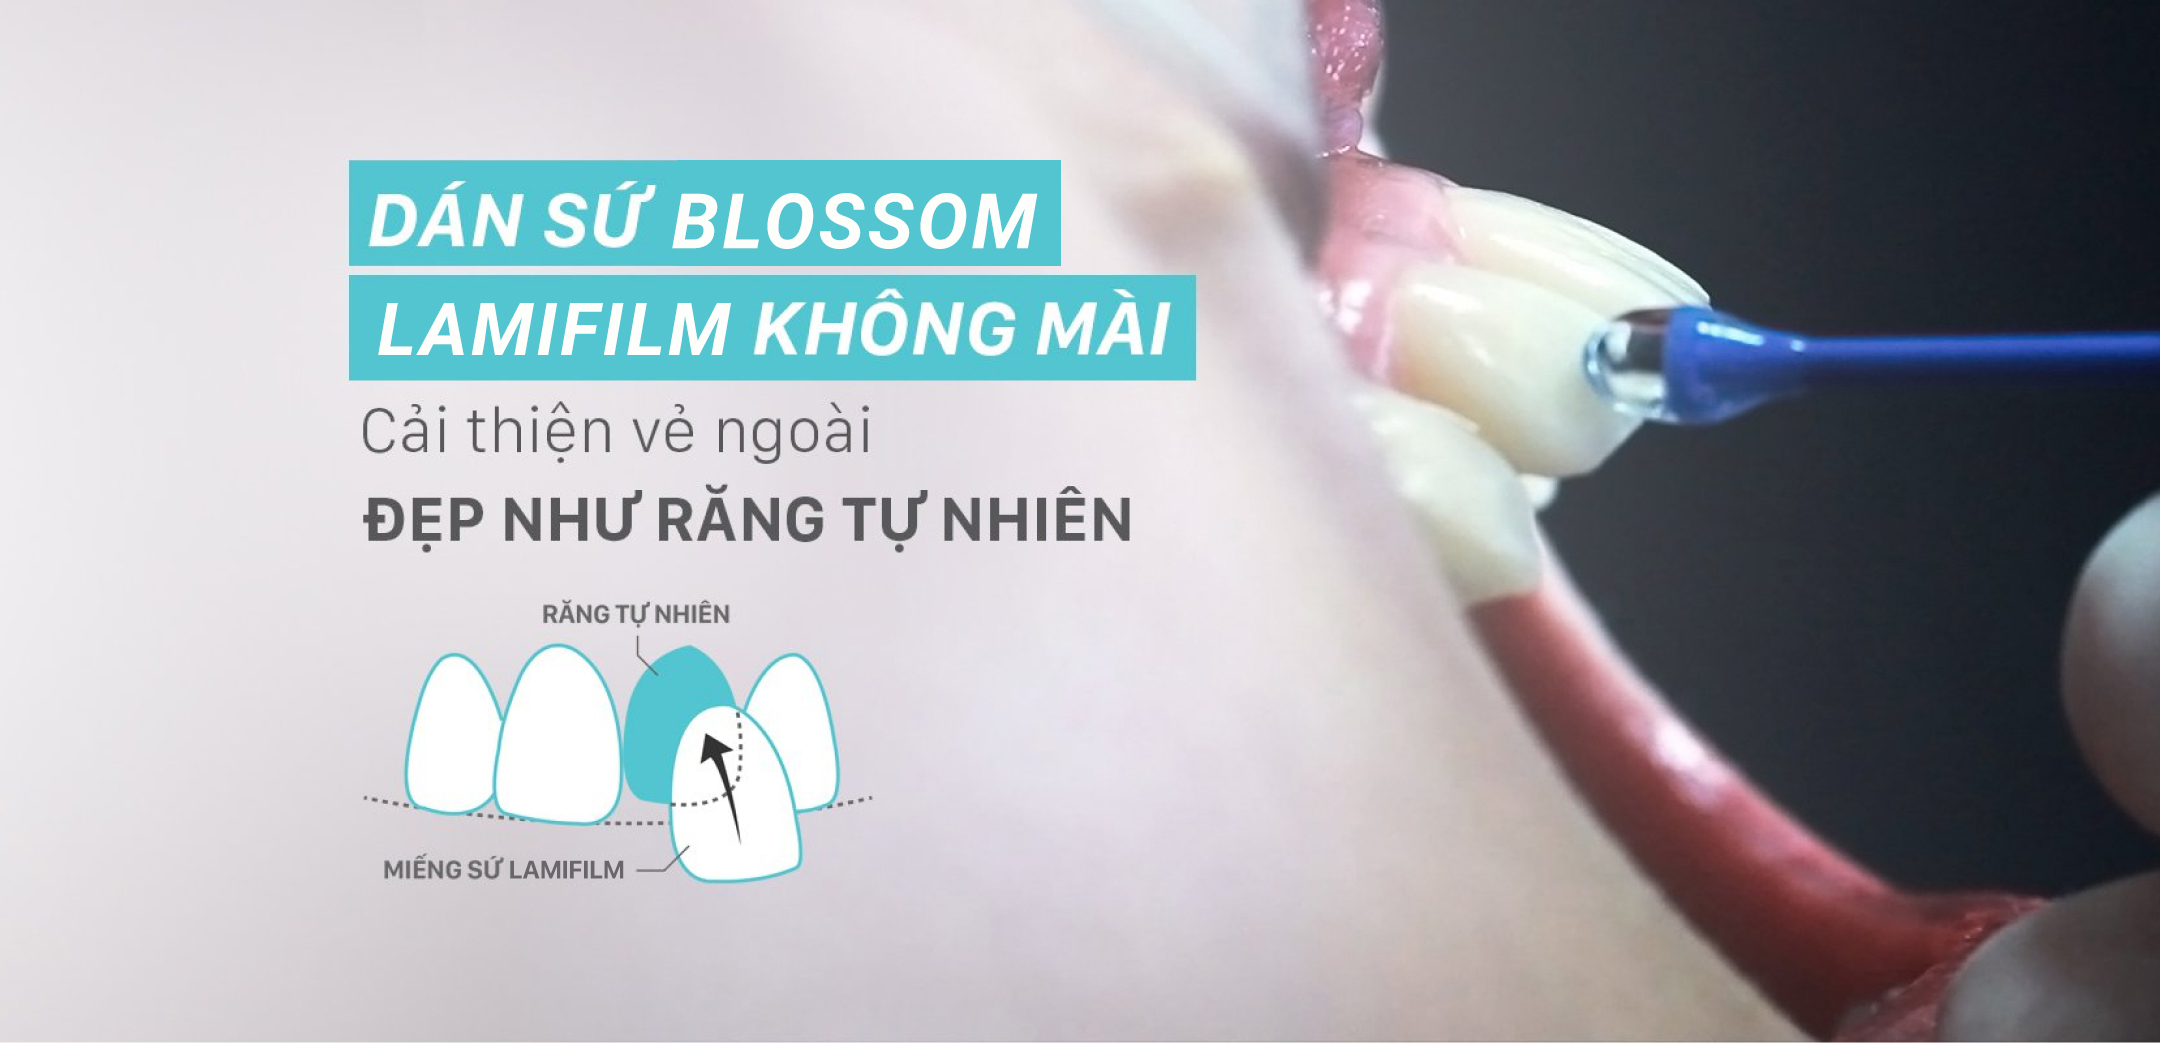 Dán sứ Blossom LamiFilm không mài là gì? blossom clinic Dán sứ Blossom LamiFilm không mài Trồng răng Implant Niềng răng Invisalign